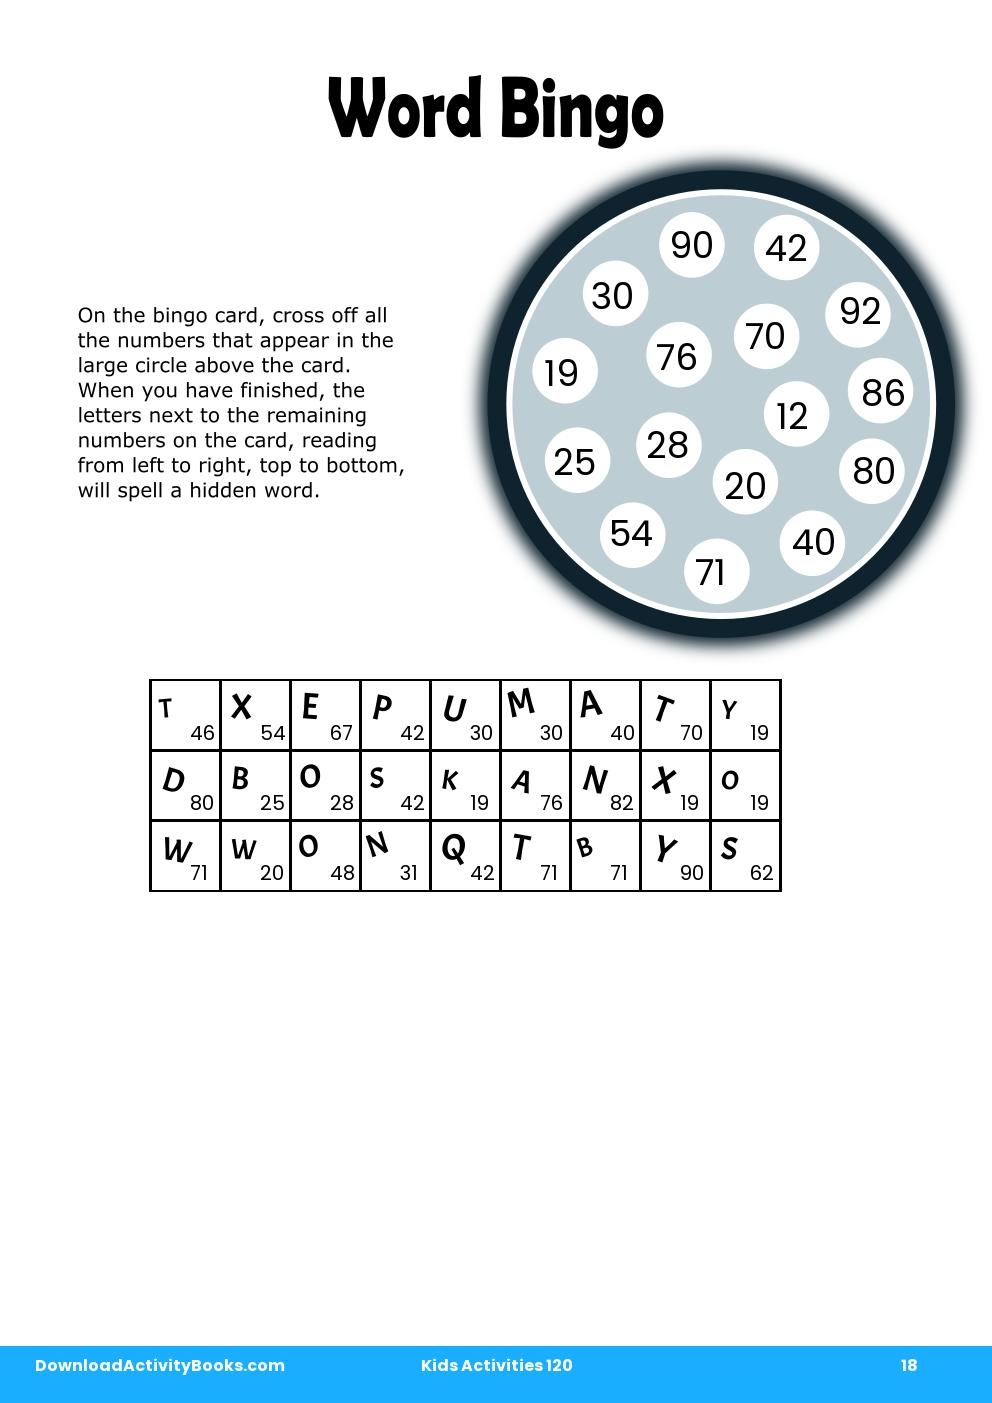 Word Bingo in Kids Activities 120